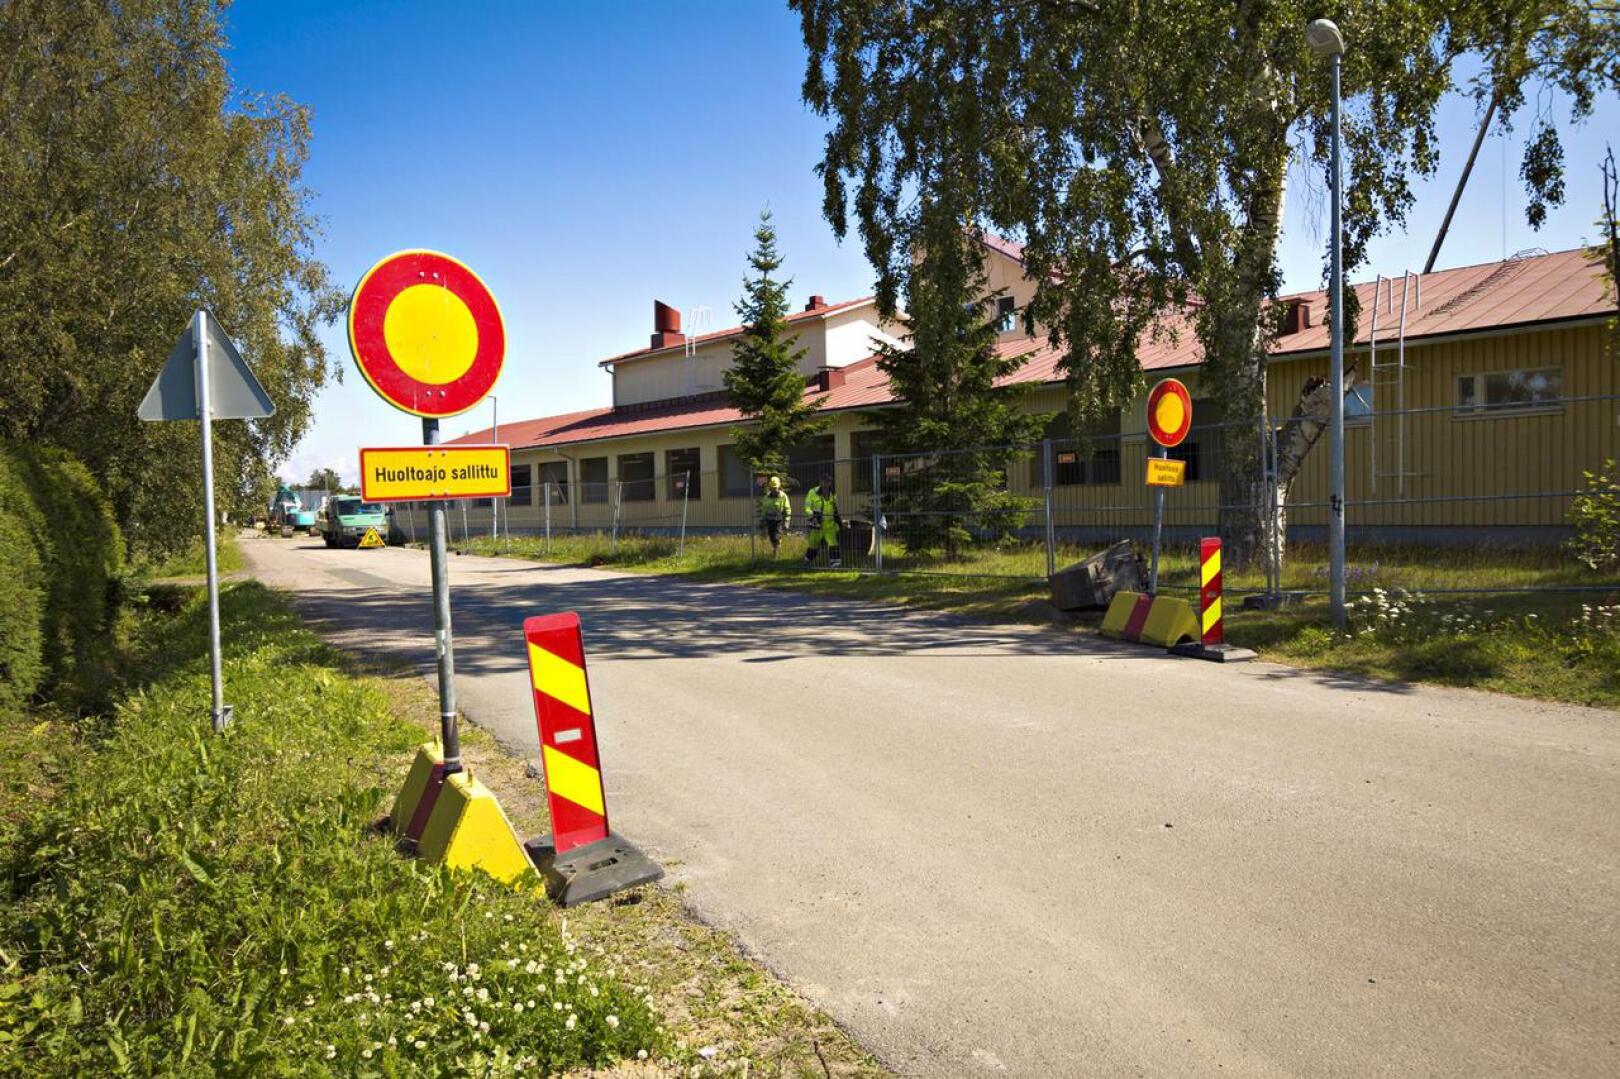 Koulupolulle Pohjankyläntien liittymän päähän asetetut liikennemerkit kieltävät kaiken ajoneuvoliikenteen Koulupolulla huoltoajoa lukuunottamatta.